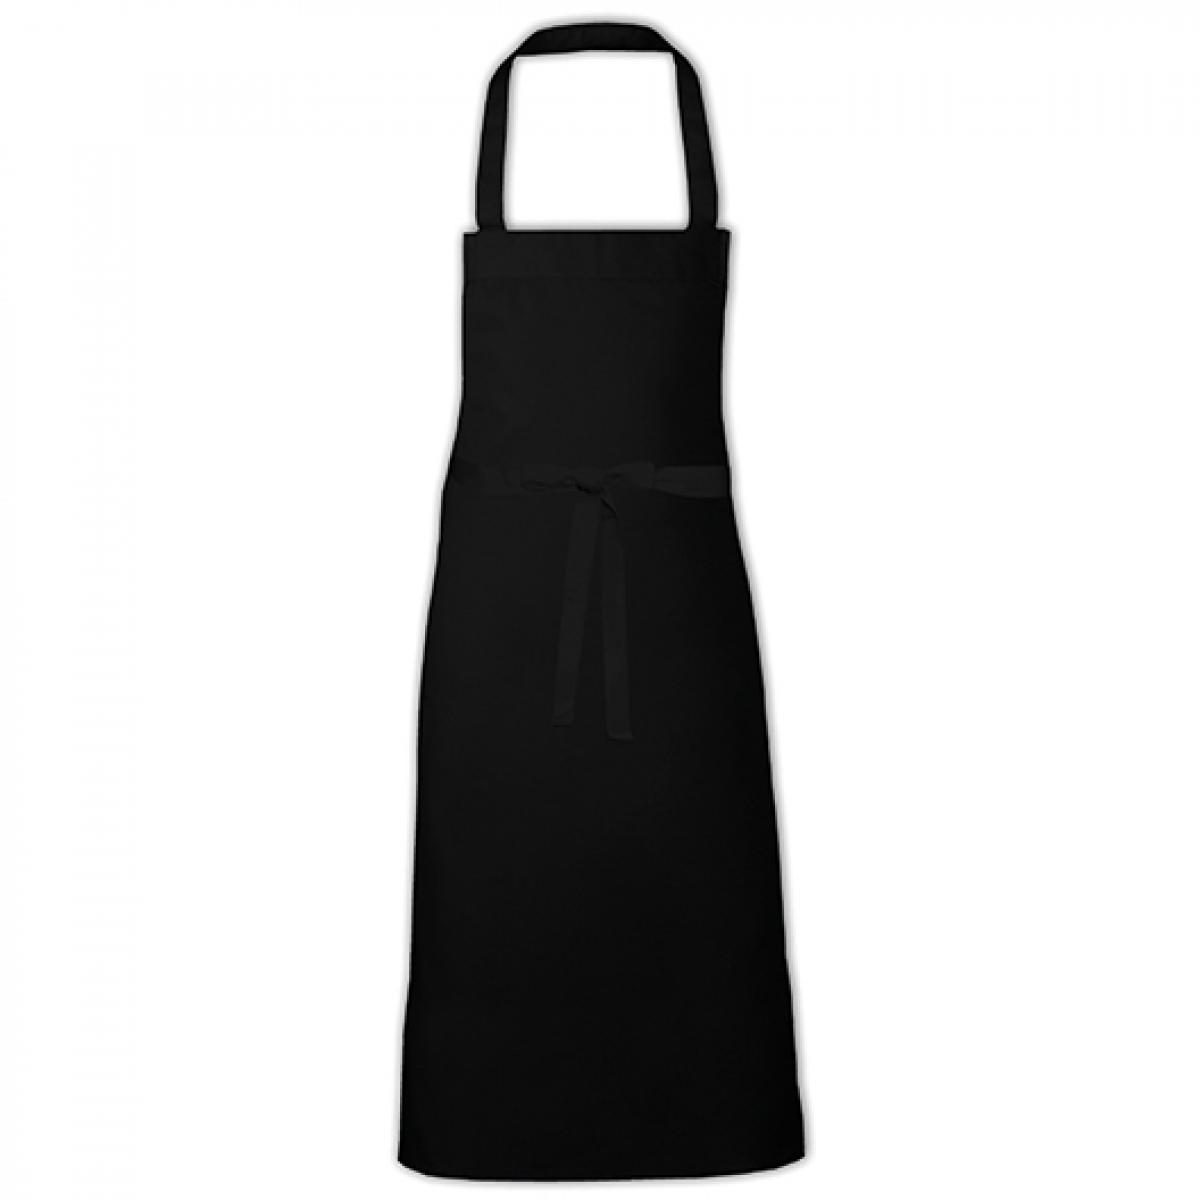 Hersteller: Link Kitchen Wear Herstellernummer: BBQ9090EU Artikelbezeichnung: Barbecue Apron XB - 90 x 90 cm - waschbar bis 60 °C Farbe: Black